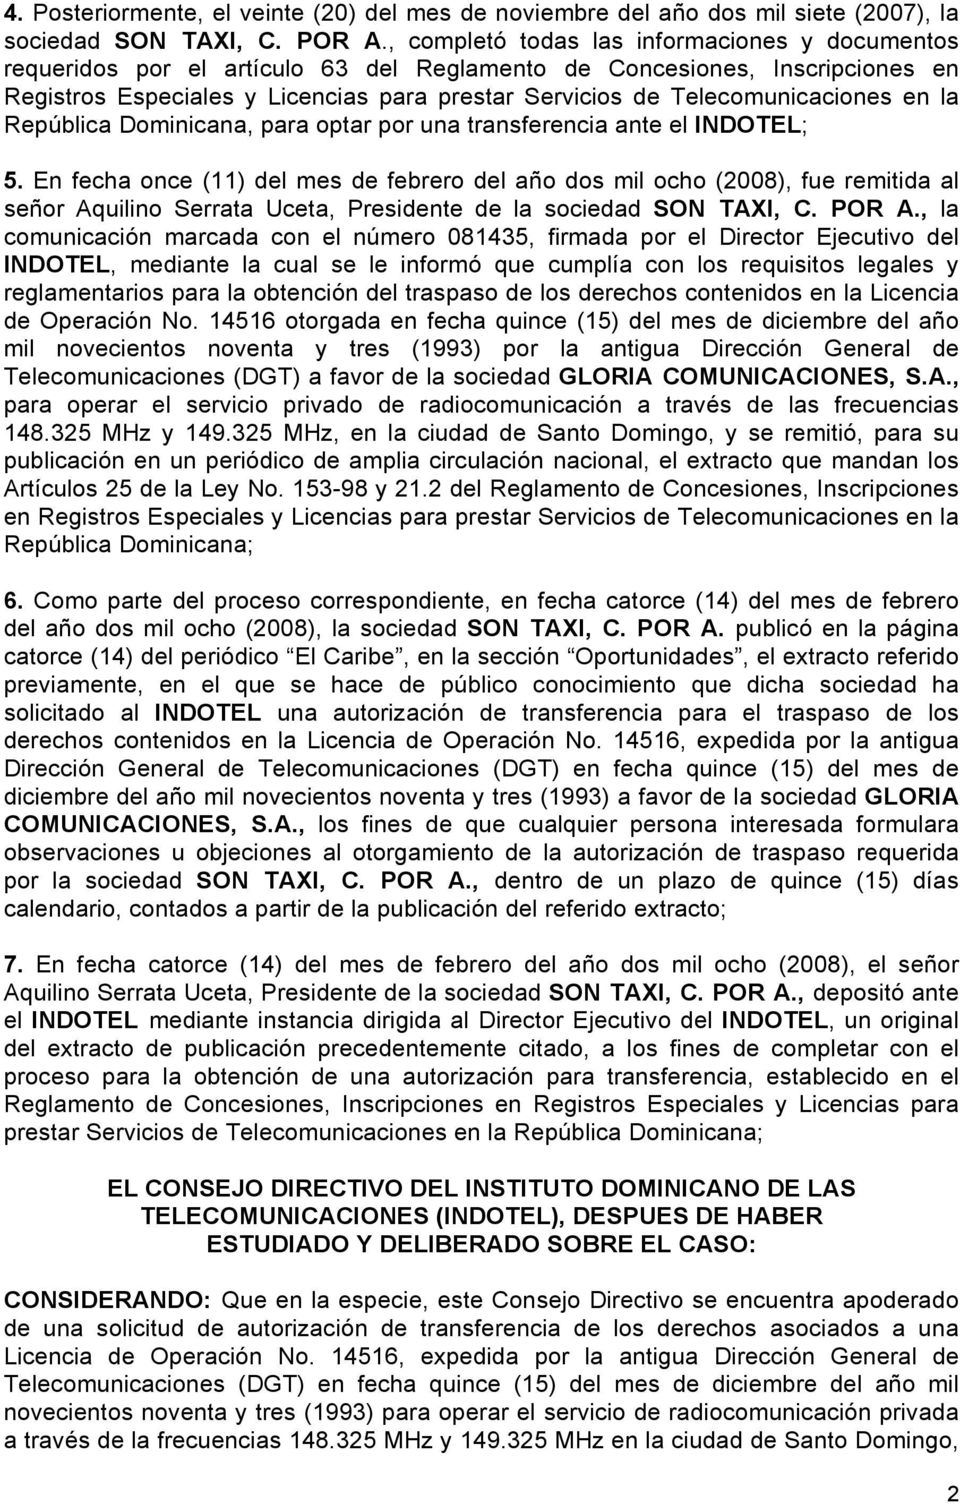 Telecomunicaciones en la República Dominicana, para optar por una transferencia ante el INDOTEL; 5.